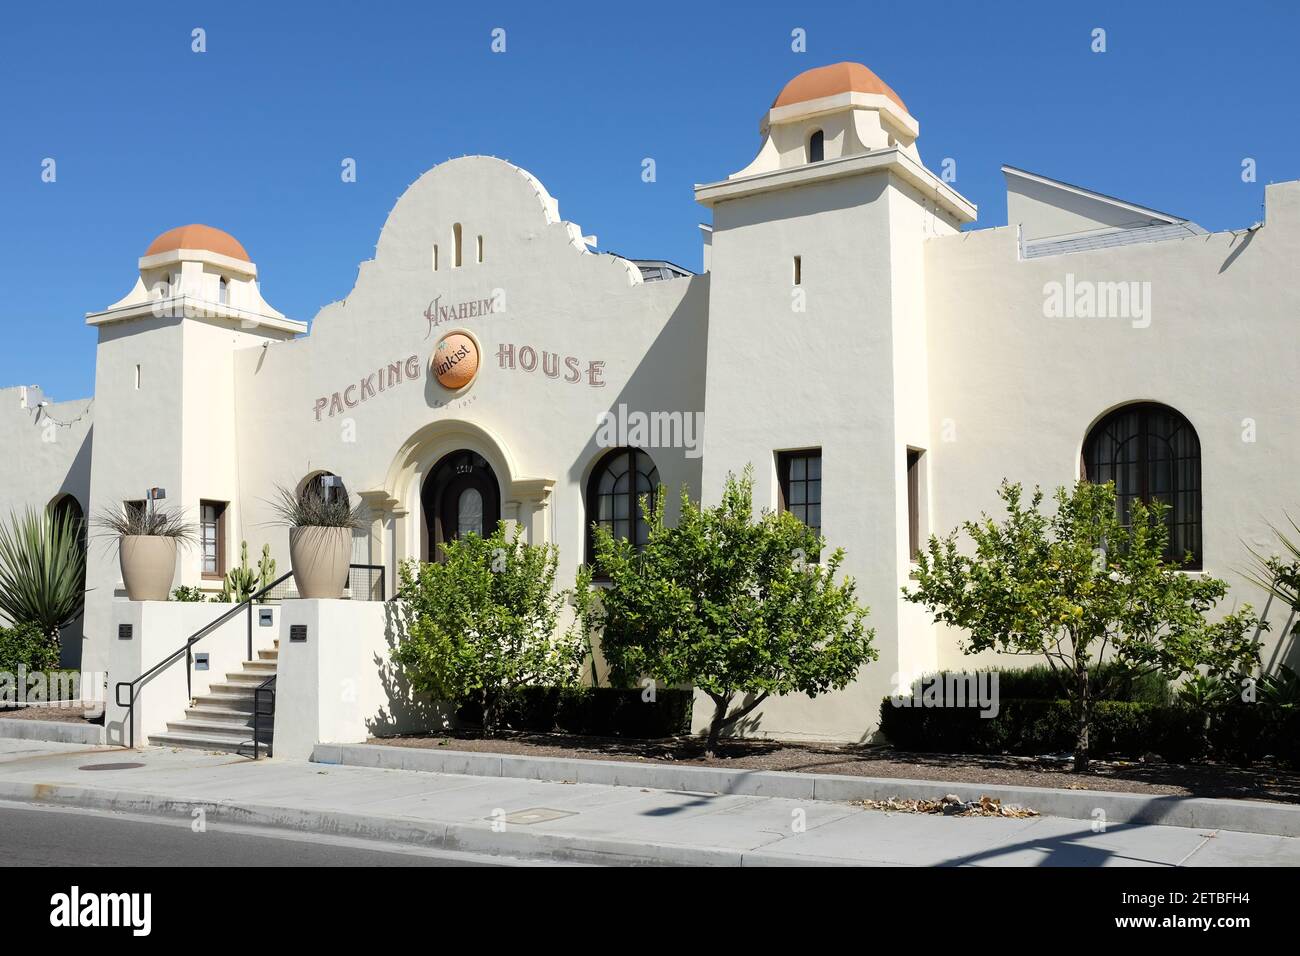 ANAHEIM, CALIFORNIE - 1er MARS 2021 : la salle de restauration gastronomique Anaheim Packing House, ainsi que le bâtiment Packard, et un marché agricole, composent un Banque D'Images